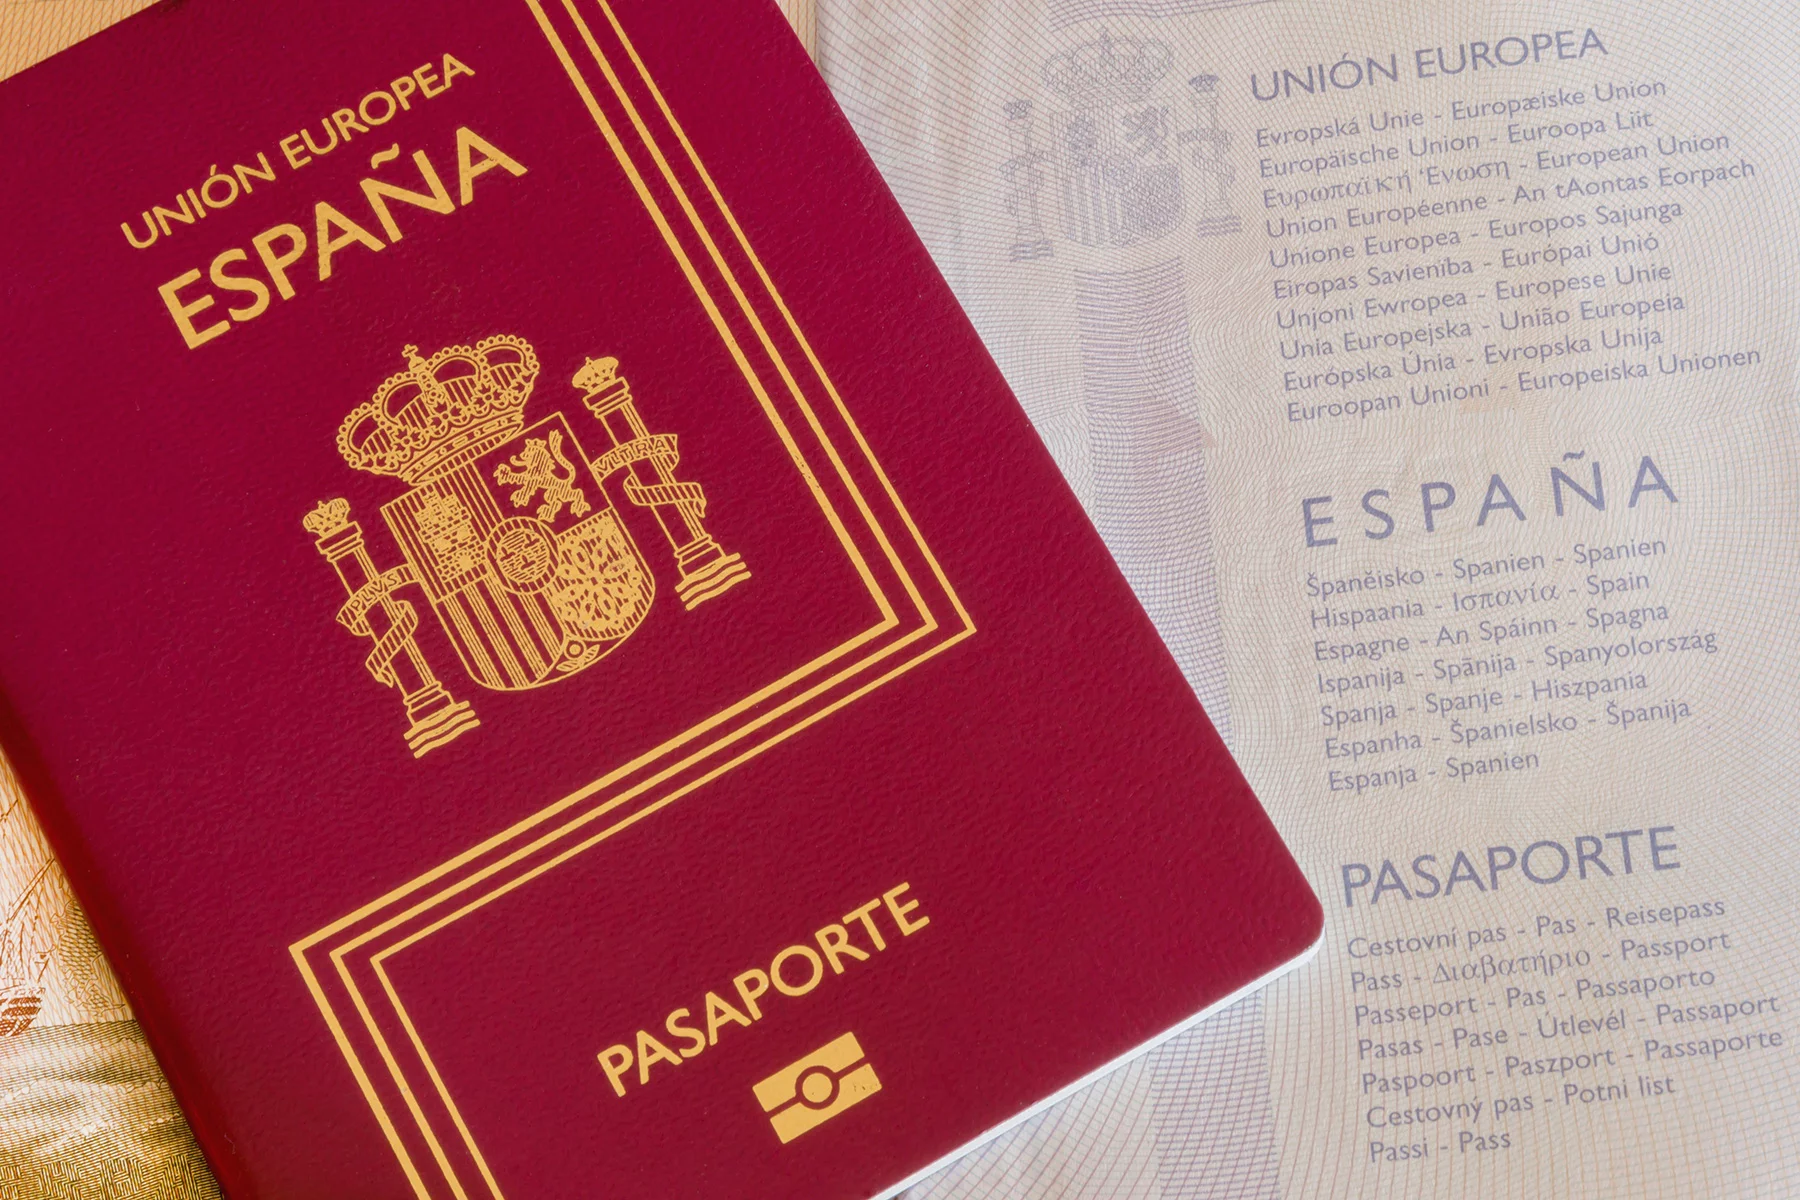 Spanish passport cover